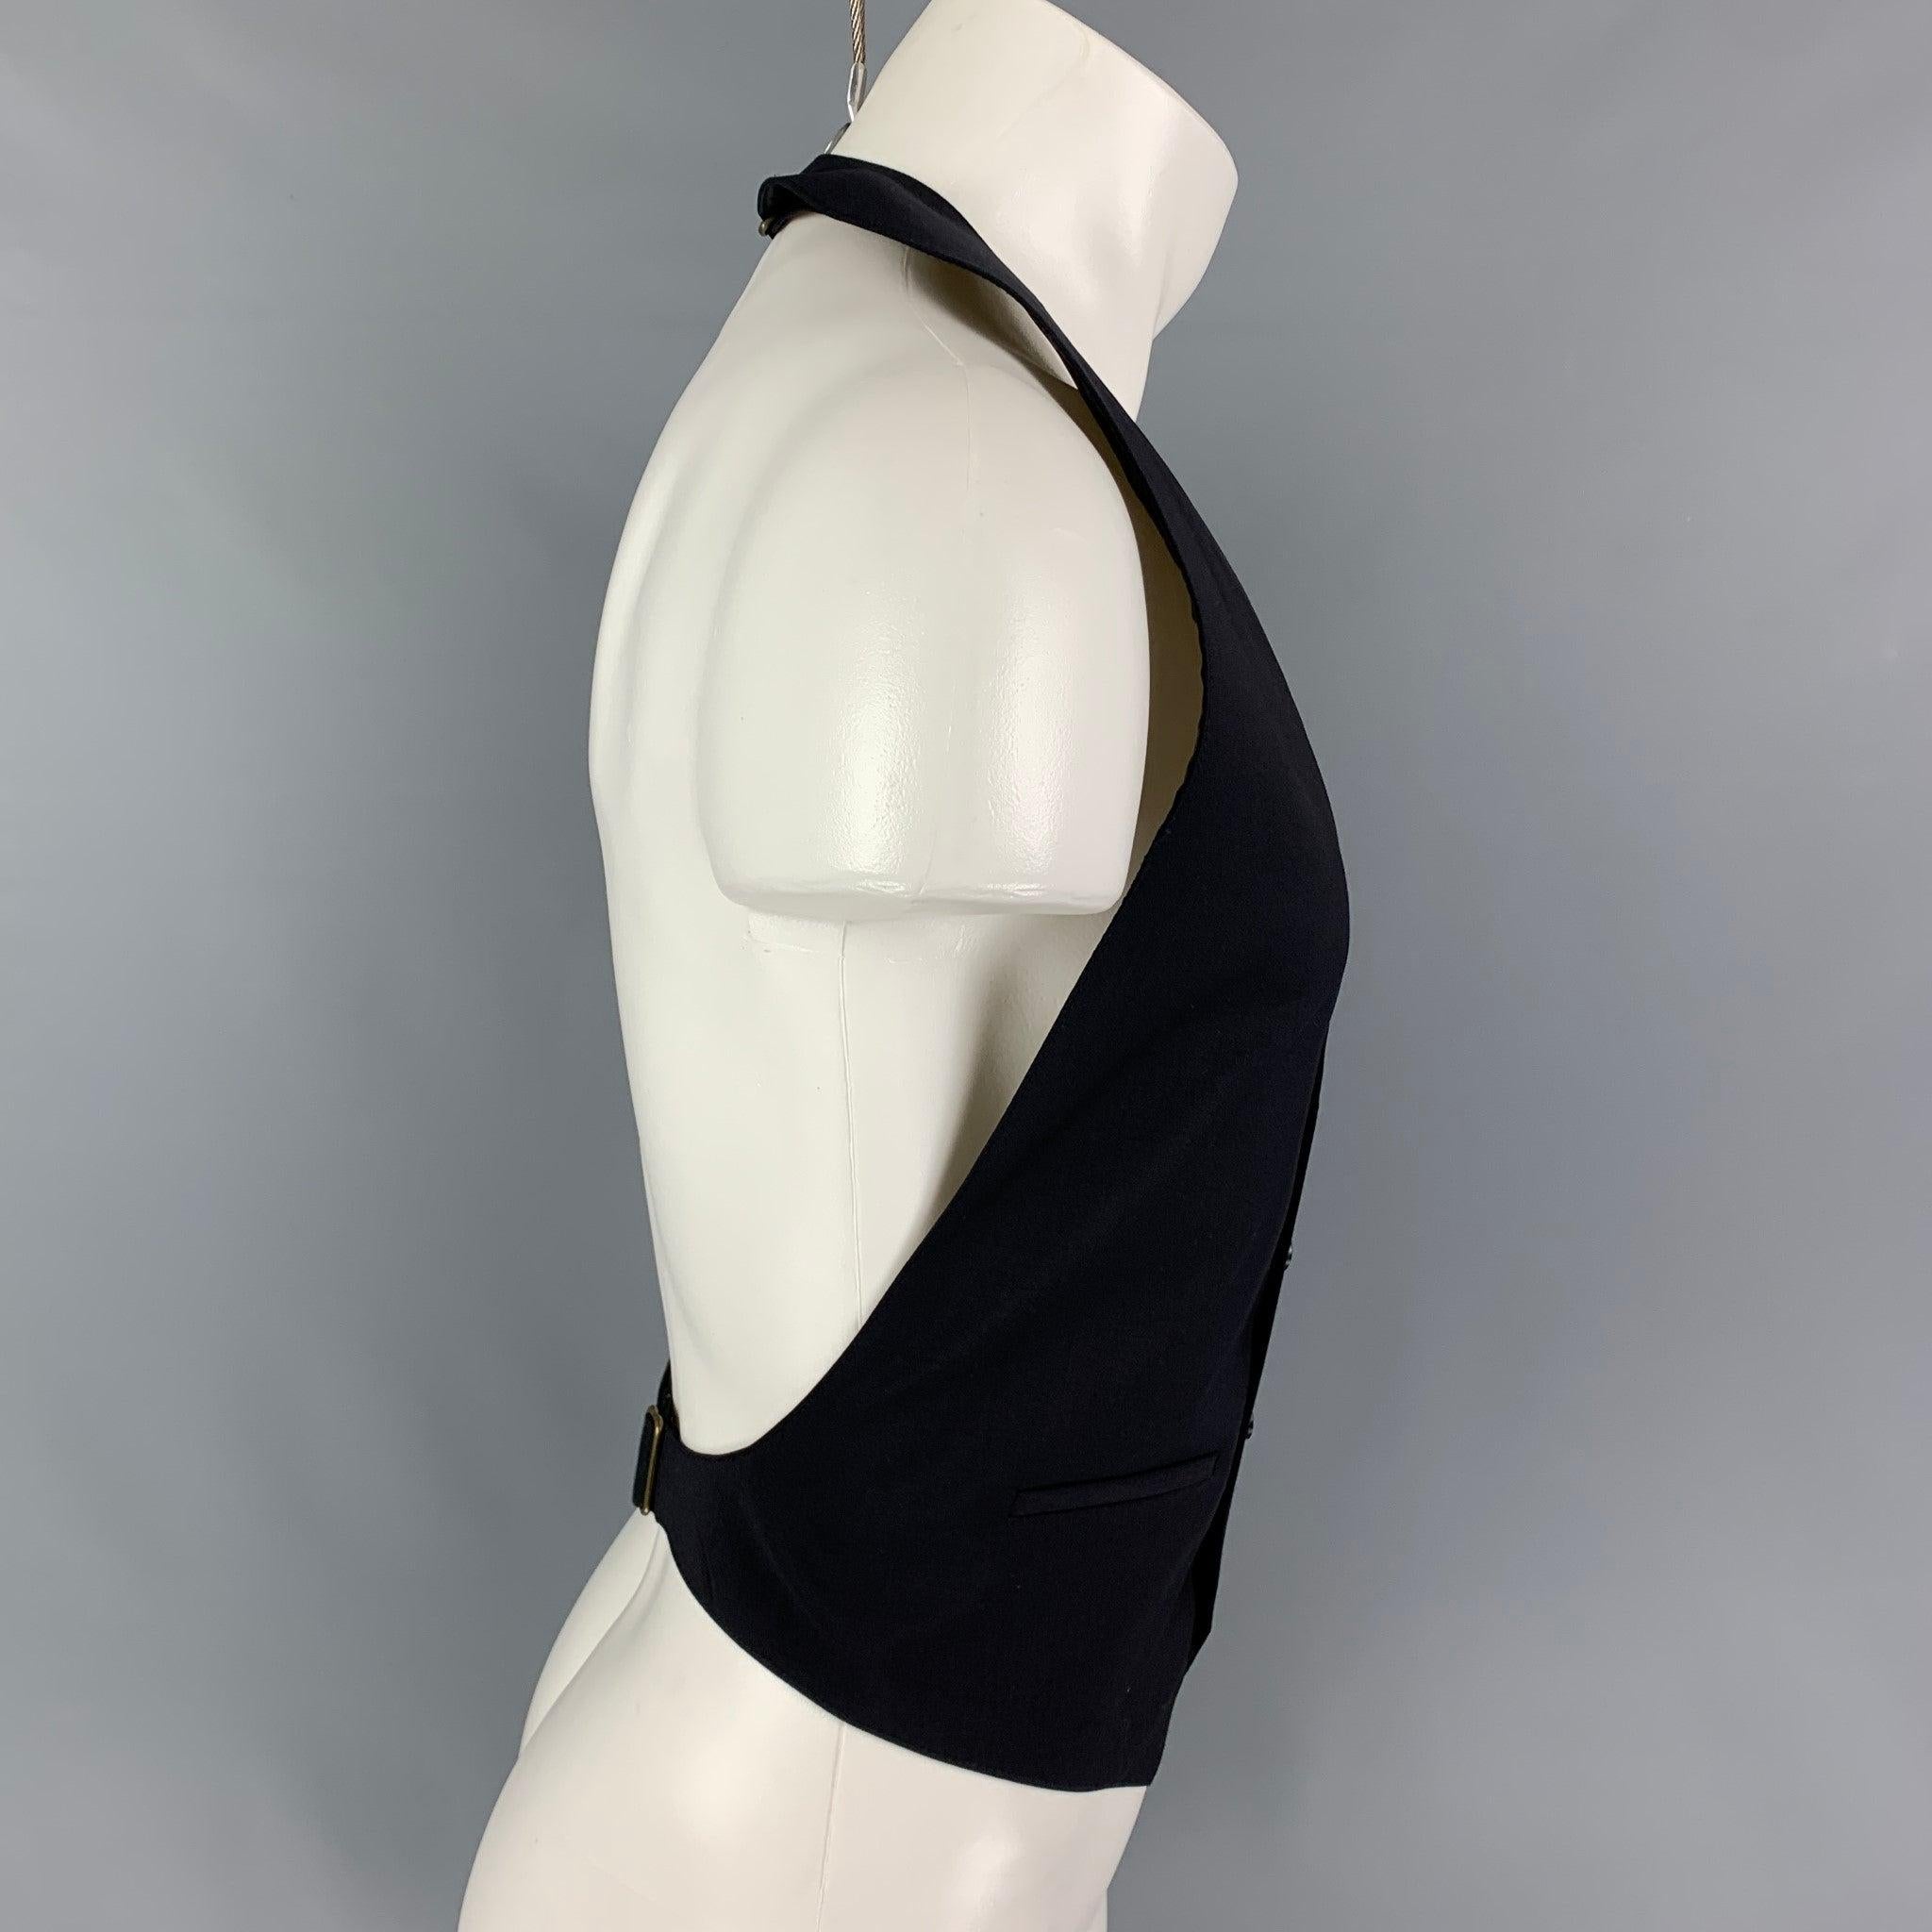 MARC JACOBS bestes Modell aus schwarzer Wolle mit rückenfreiem Schnitt, geschlitzten Taschen, verstellbarem Klettverschluss auf der Rückseite und geknöpftem Verschluss.
Sehr gut
Gebrauchtes Zustand. 

Markiert:   XL  

Abmessungen: 
  Brustkorb:
42